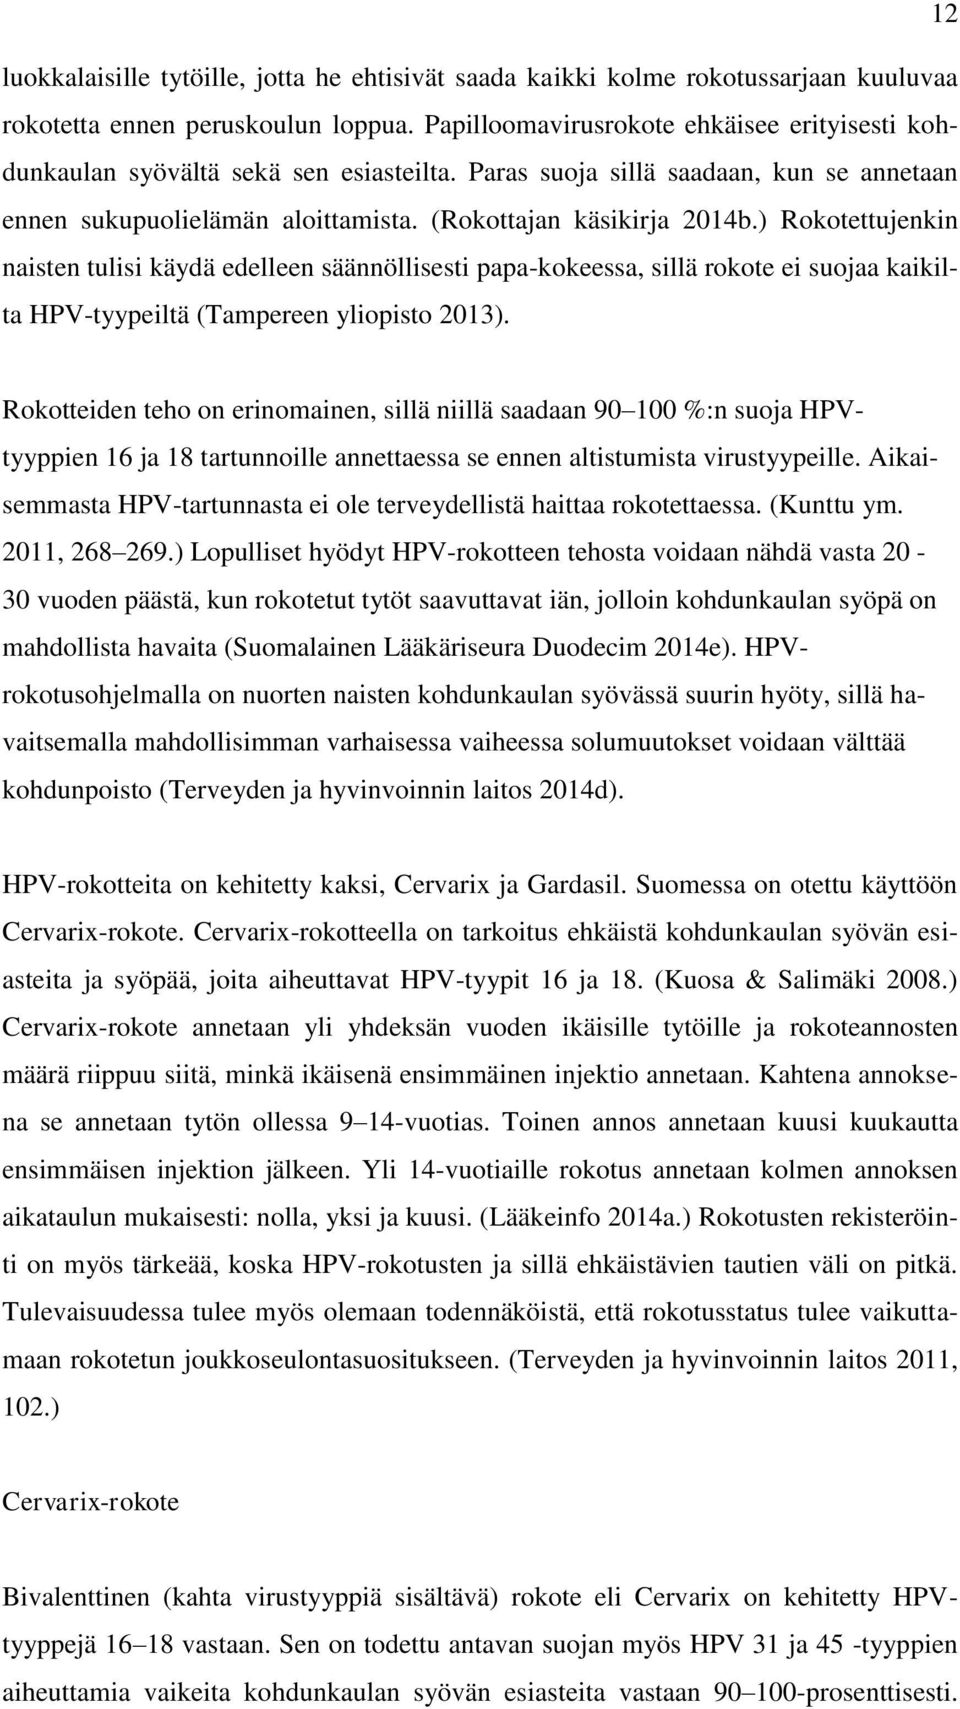 ) Rokotettujenkin naisten tulisi käydä edelleen säännöllisesti papa-kokeessa, sillä rokote ei suojaa kaikilta HPV-tyypeiltä (Tampereen yliopisto 2013).